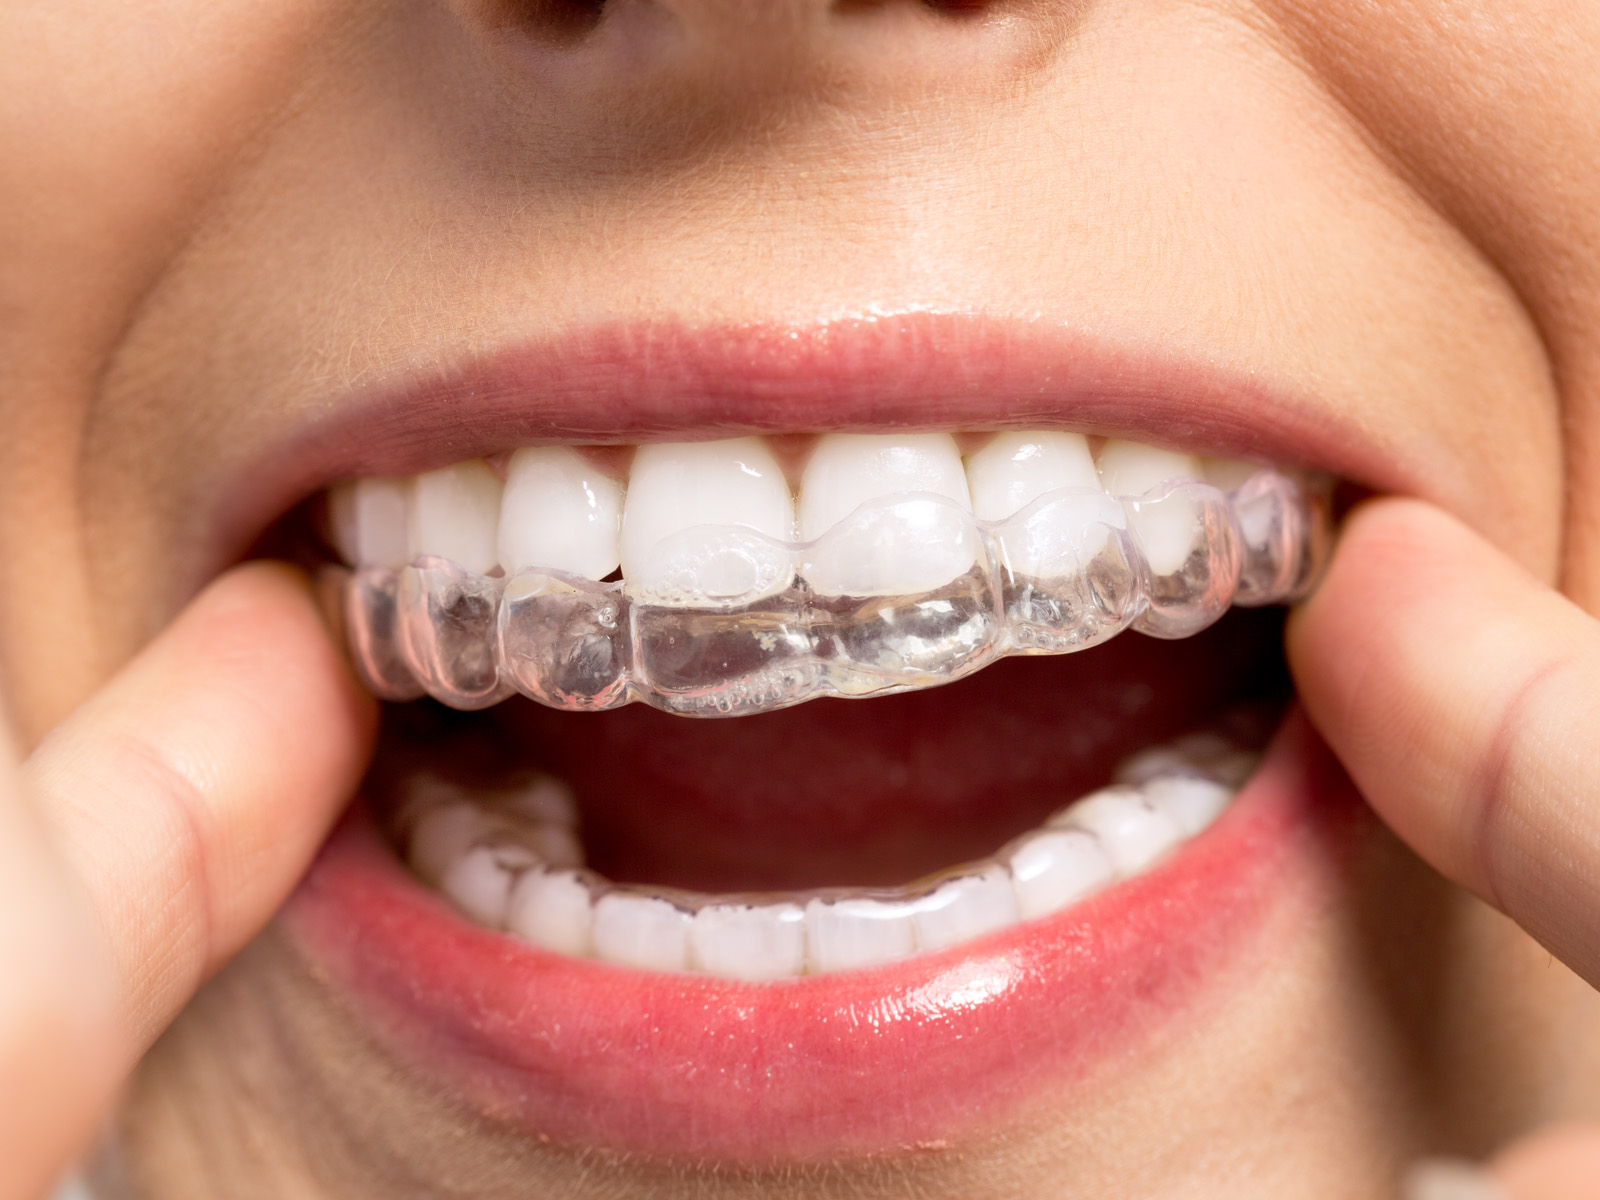 Can Invisalign loosen teeth?